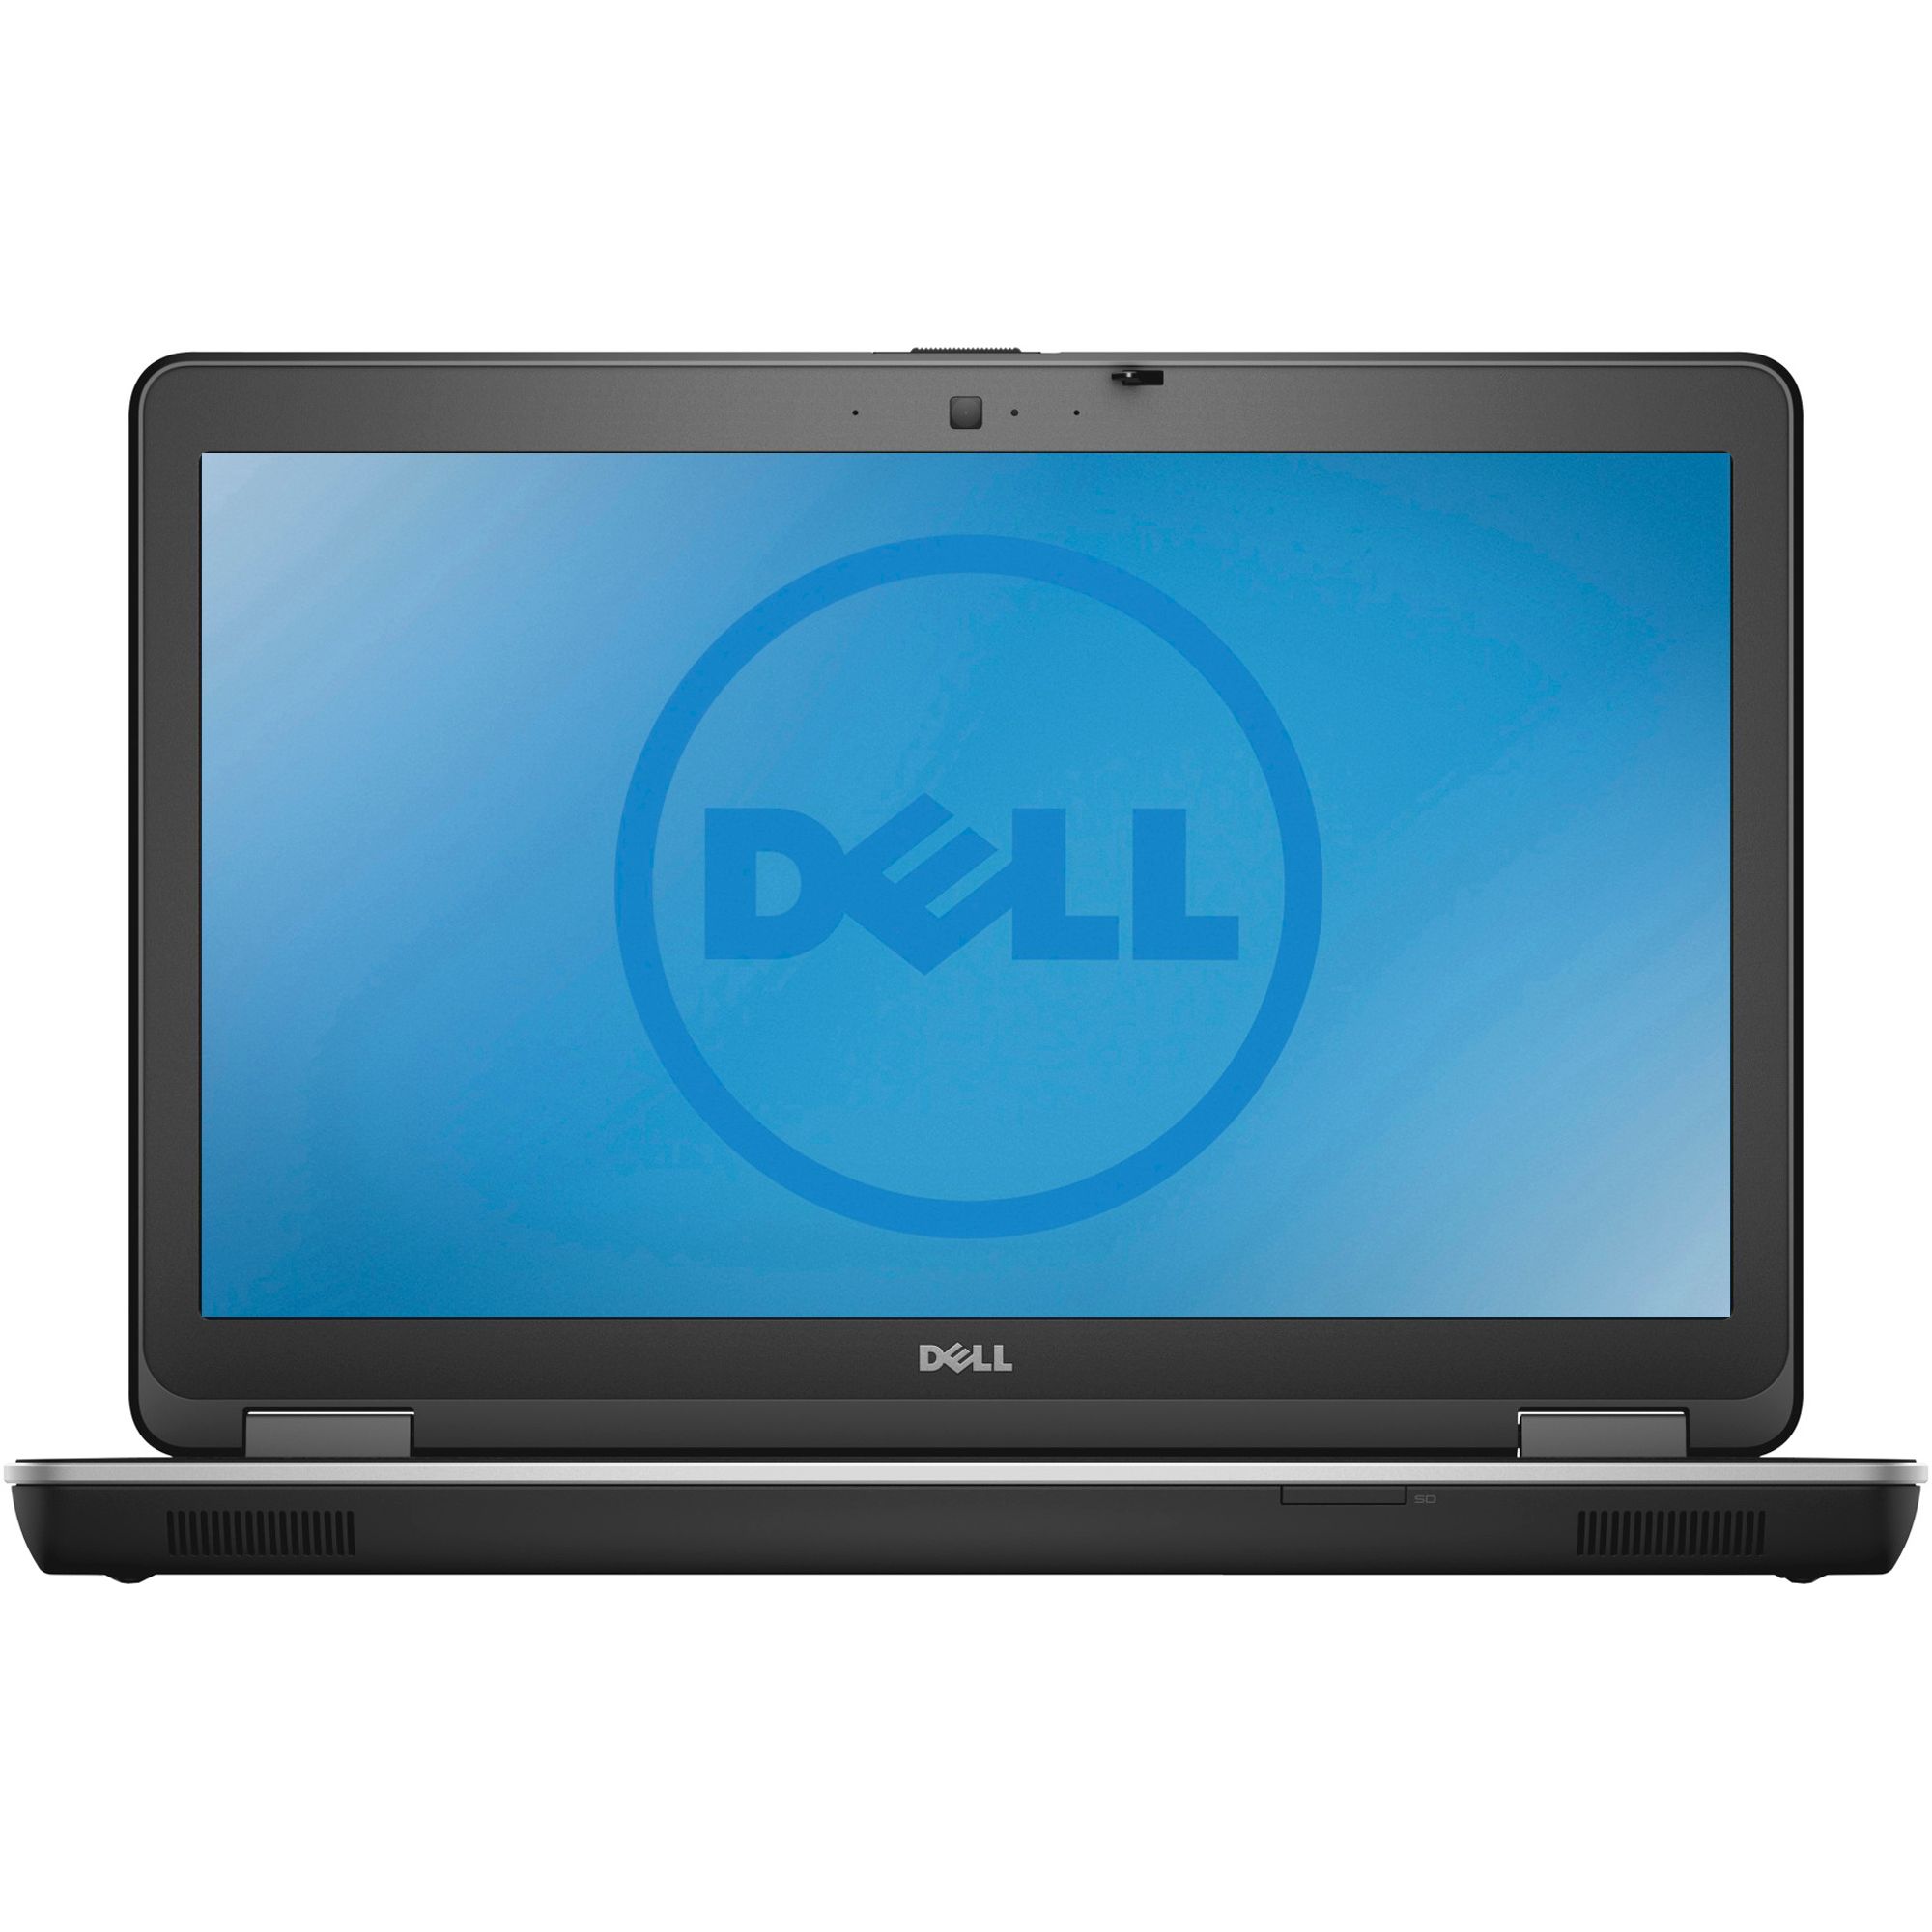 Laptop Dell Precision M2800, Intel Core i7-4710MQ 2.50GHz, 16GB DDR3, 1TB SATA, Webcam, 15.6 Inch